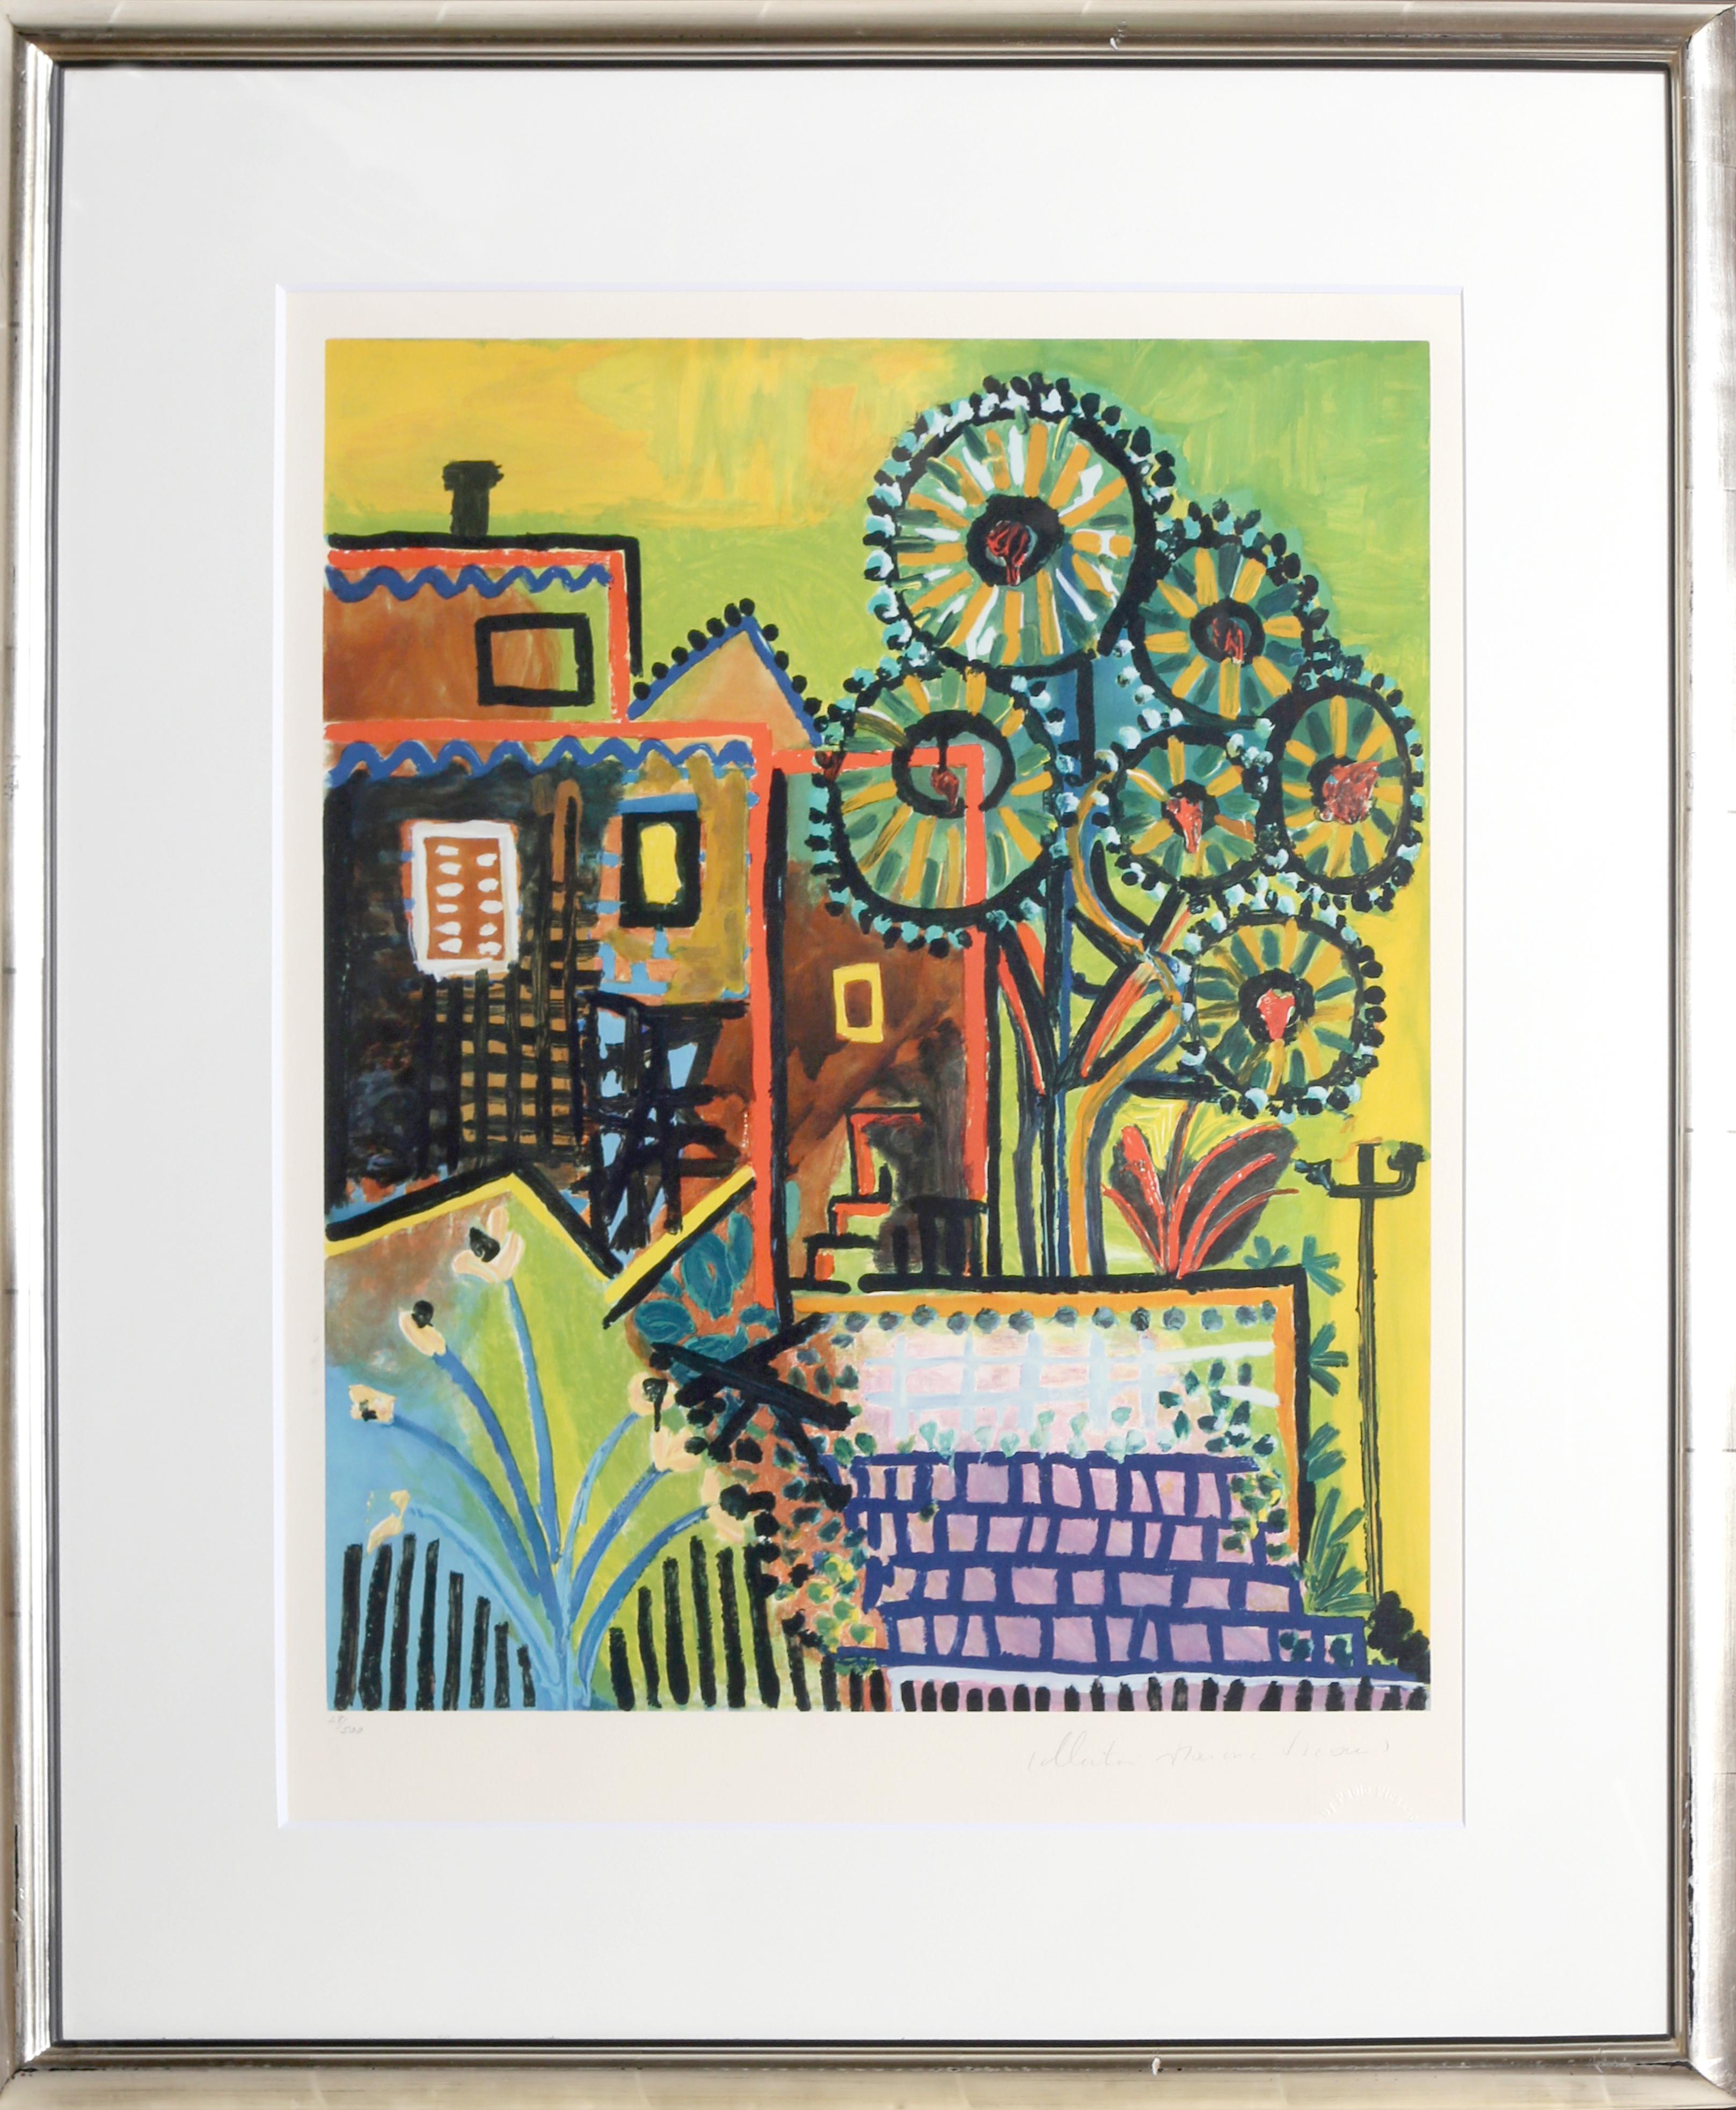 Lithographie de la Collection Salsa de Marina Picasso d'après le tableau "Paysage" de Pablo Picasso.  La peinture originale a été achevée en 1937. Dans les années 1970, après la mort de Picasso, Marina Picasso, sa petite-fille, a autorisé la